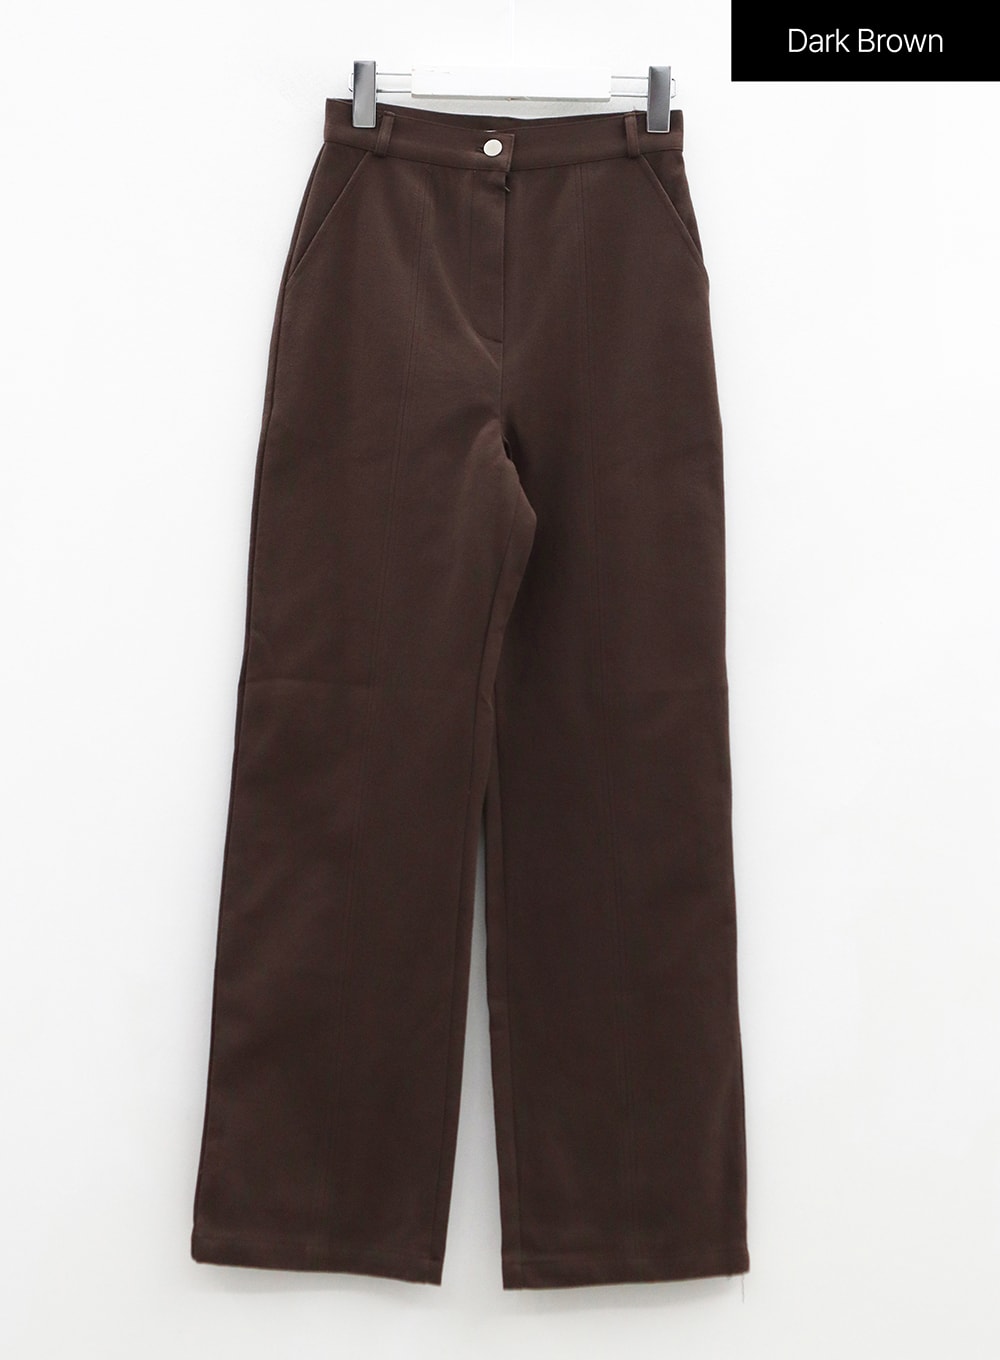 Line Detail Fall Color Cotton Pants OS13